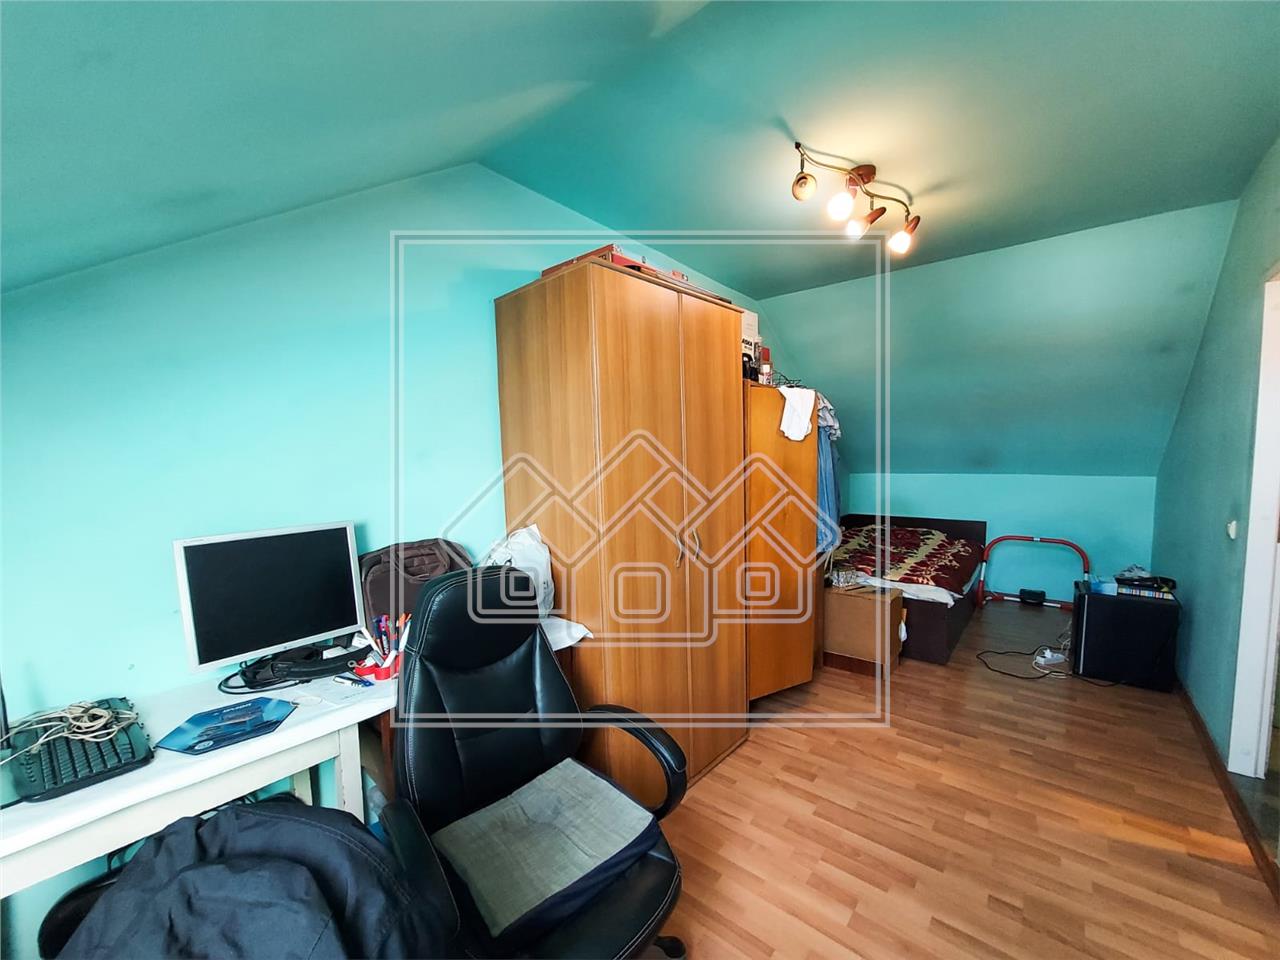 Apartament de vanzare in Sibiu - 3 camere - zona Terezian